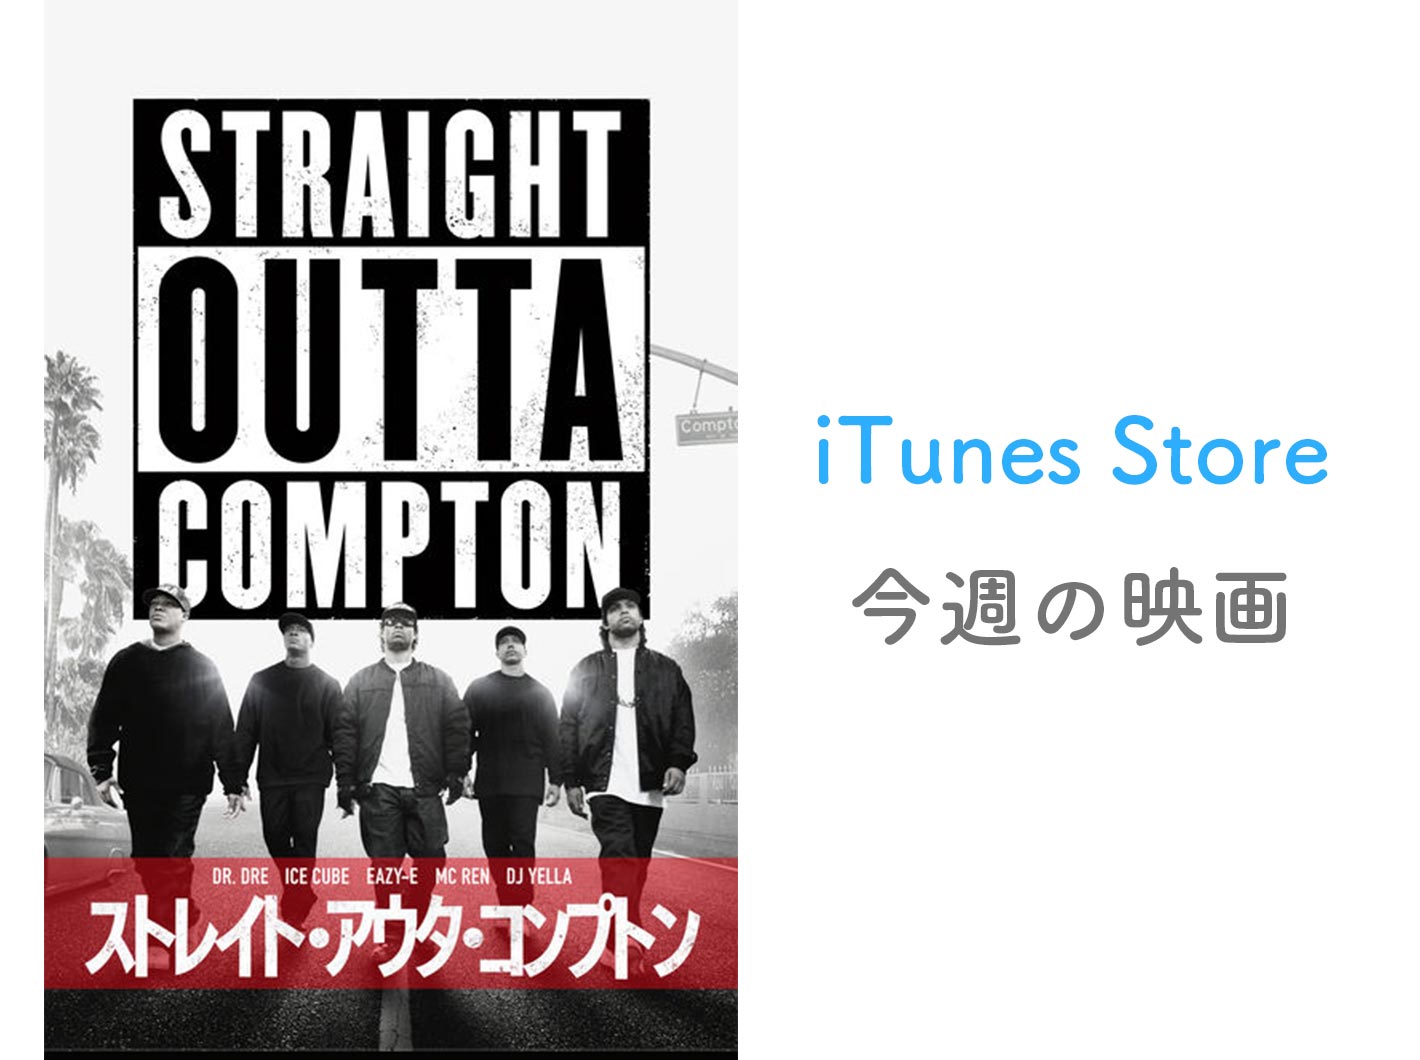 【レンタル100円】iTunes Store、「今週の映画」として「ストレイト・アウタ・コンプトン」をピックアップ